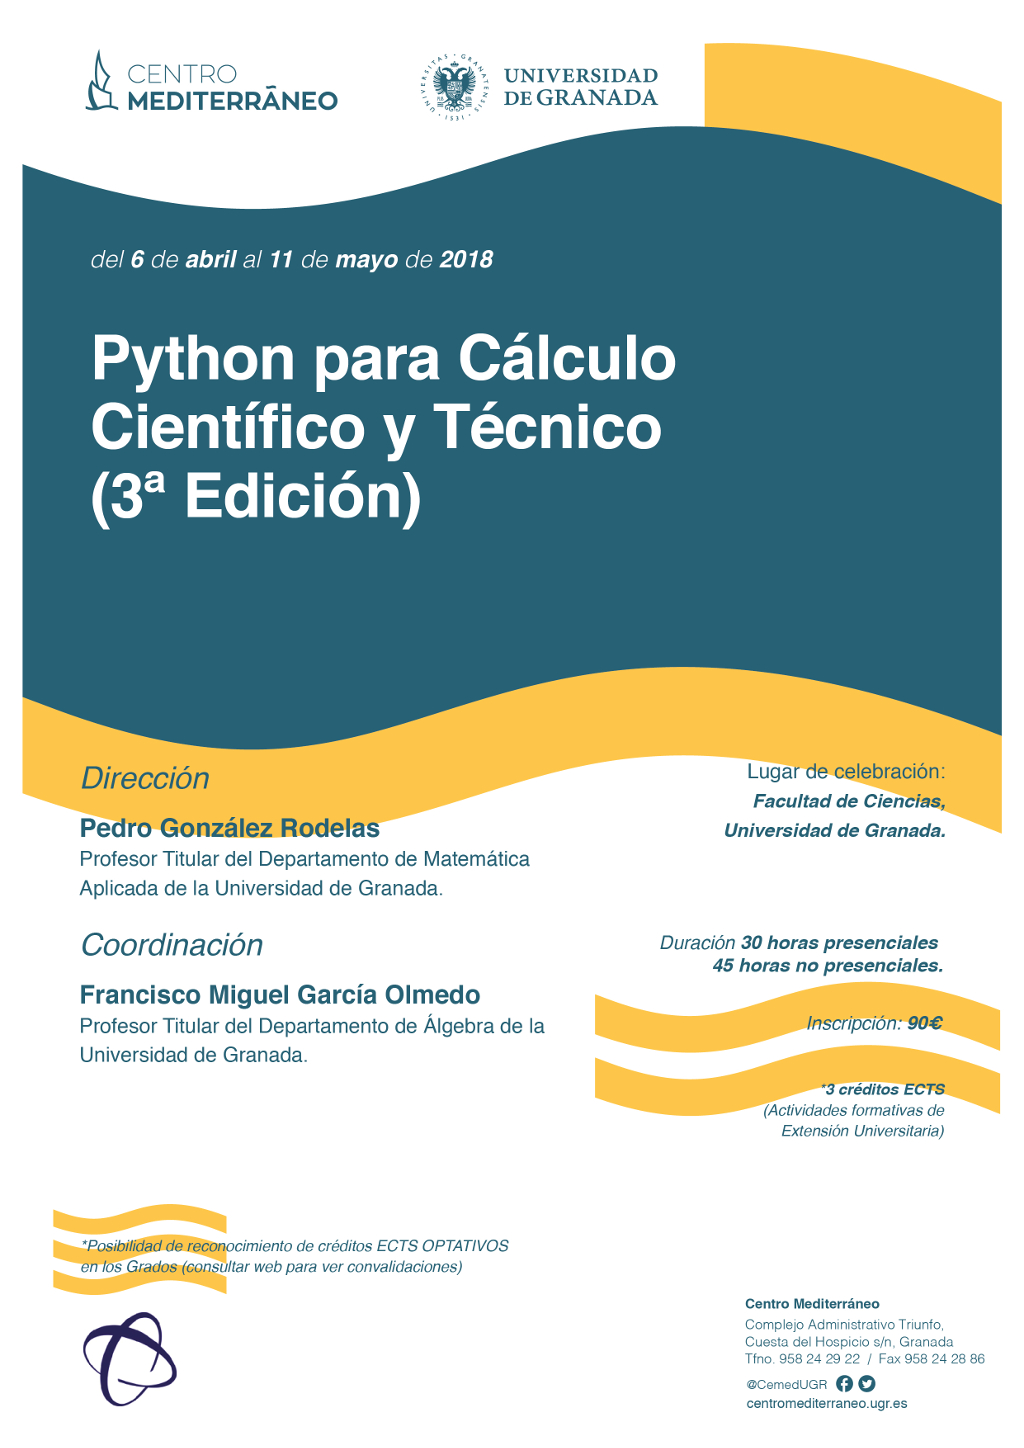 Python para Cálculo Científico y Técnico (3ª Edic.)